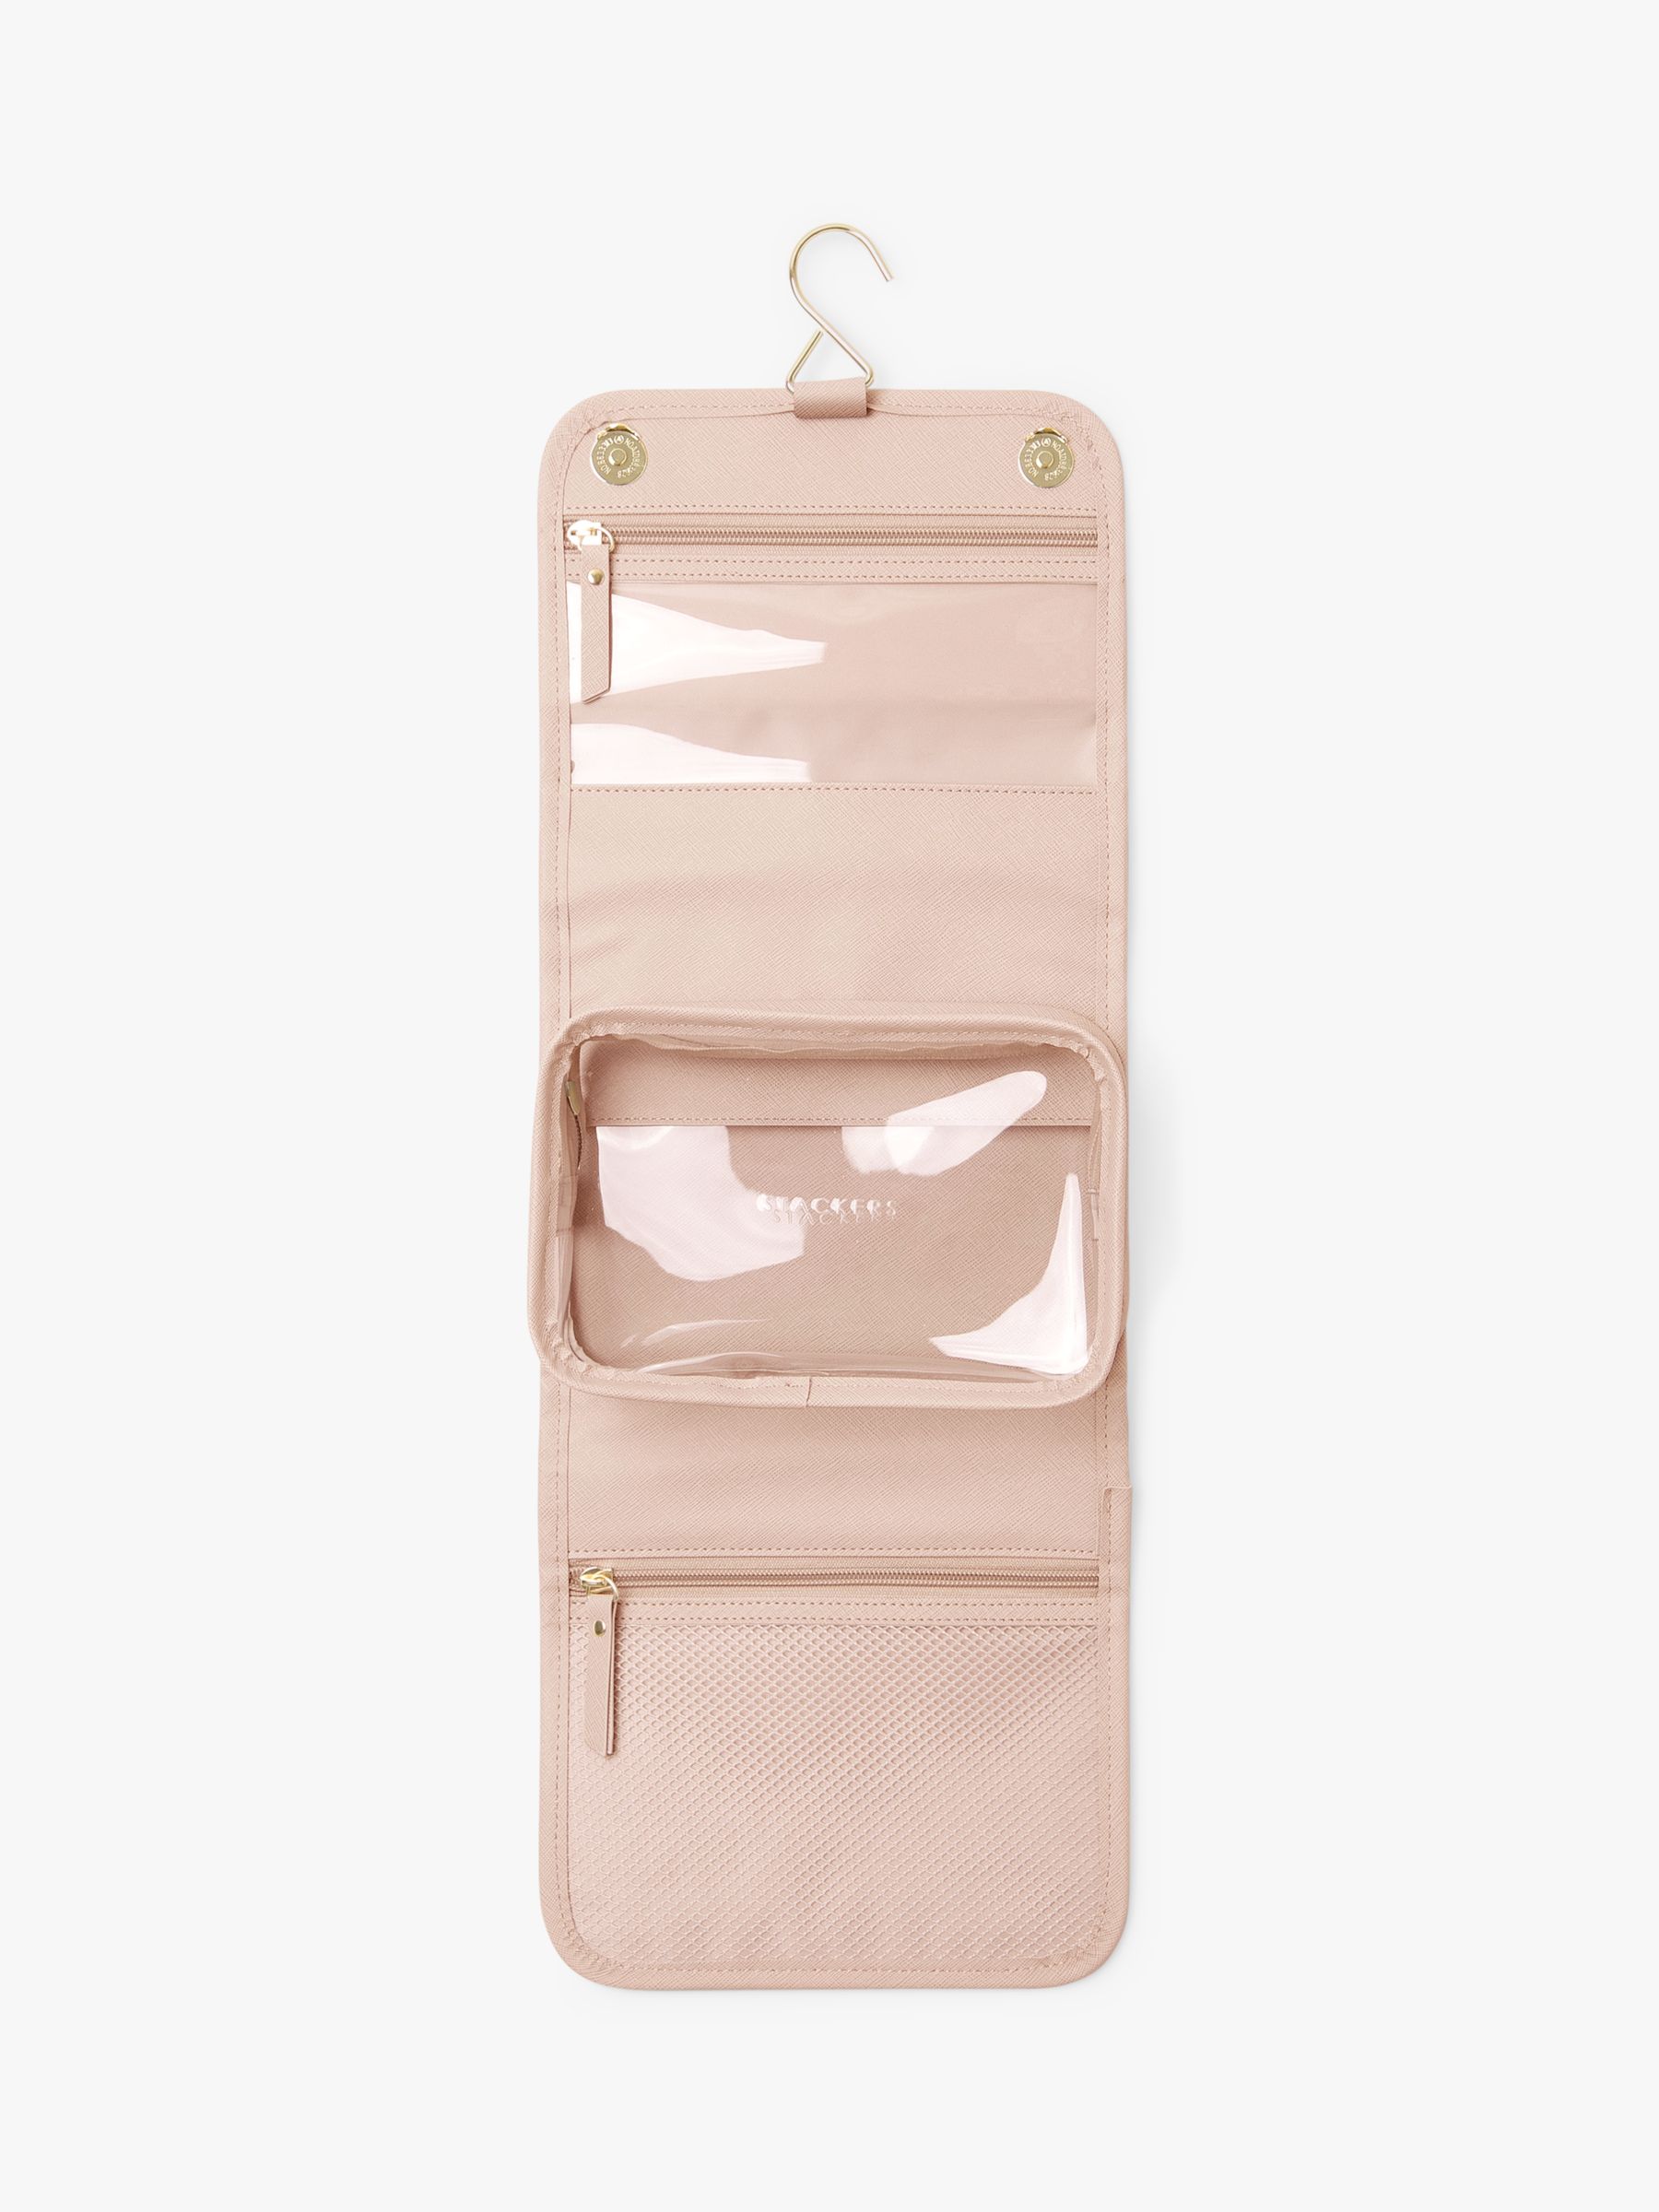 Stackers Travel Hanging Wash Bag, Blush Pink 3